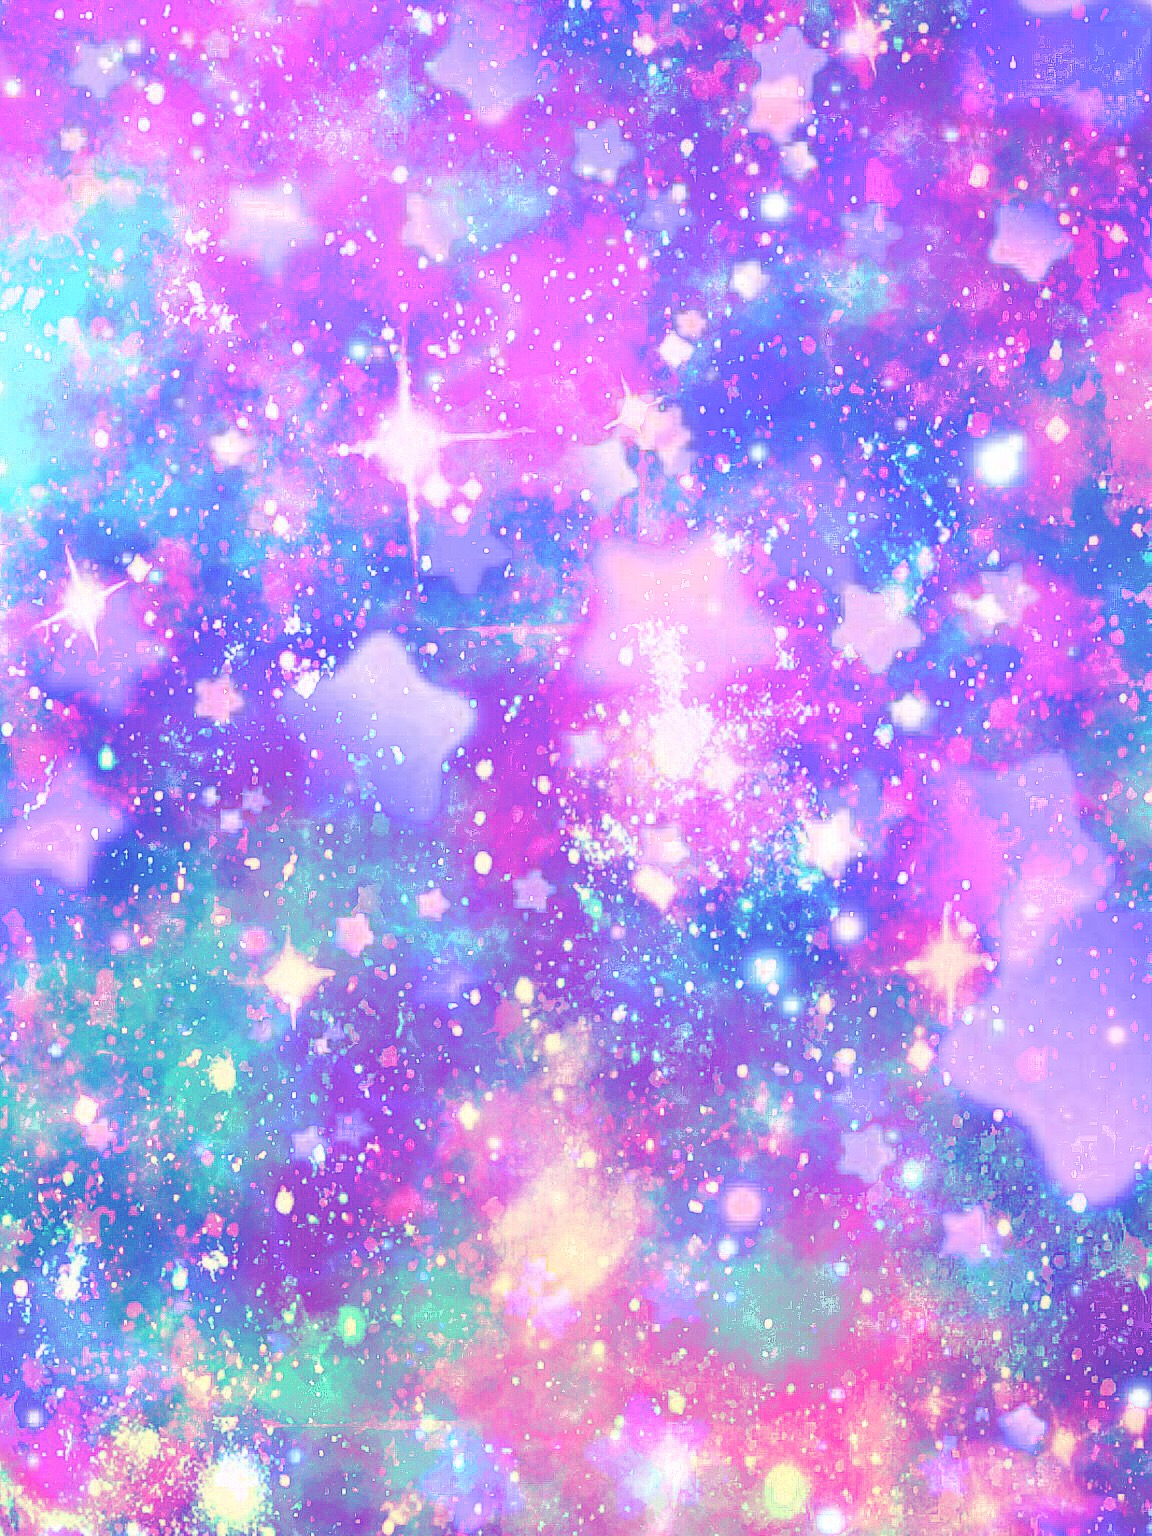 freetoedit remixit stars galaxy glitter image by @misspink88.